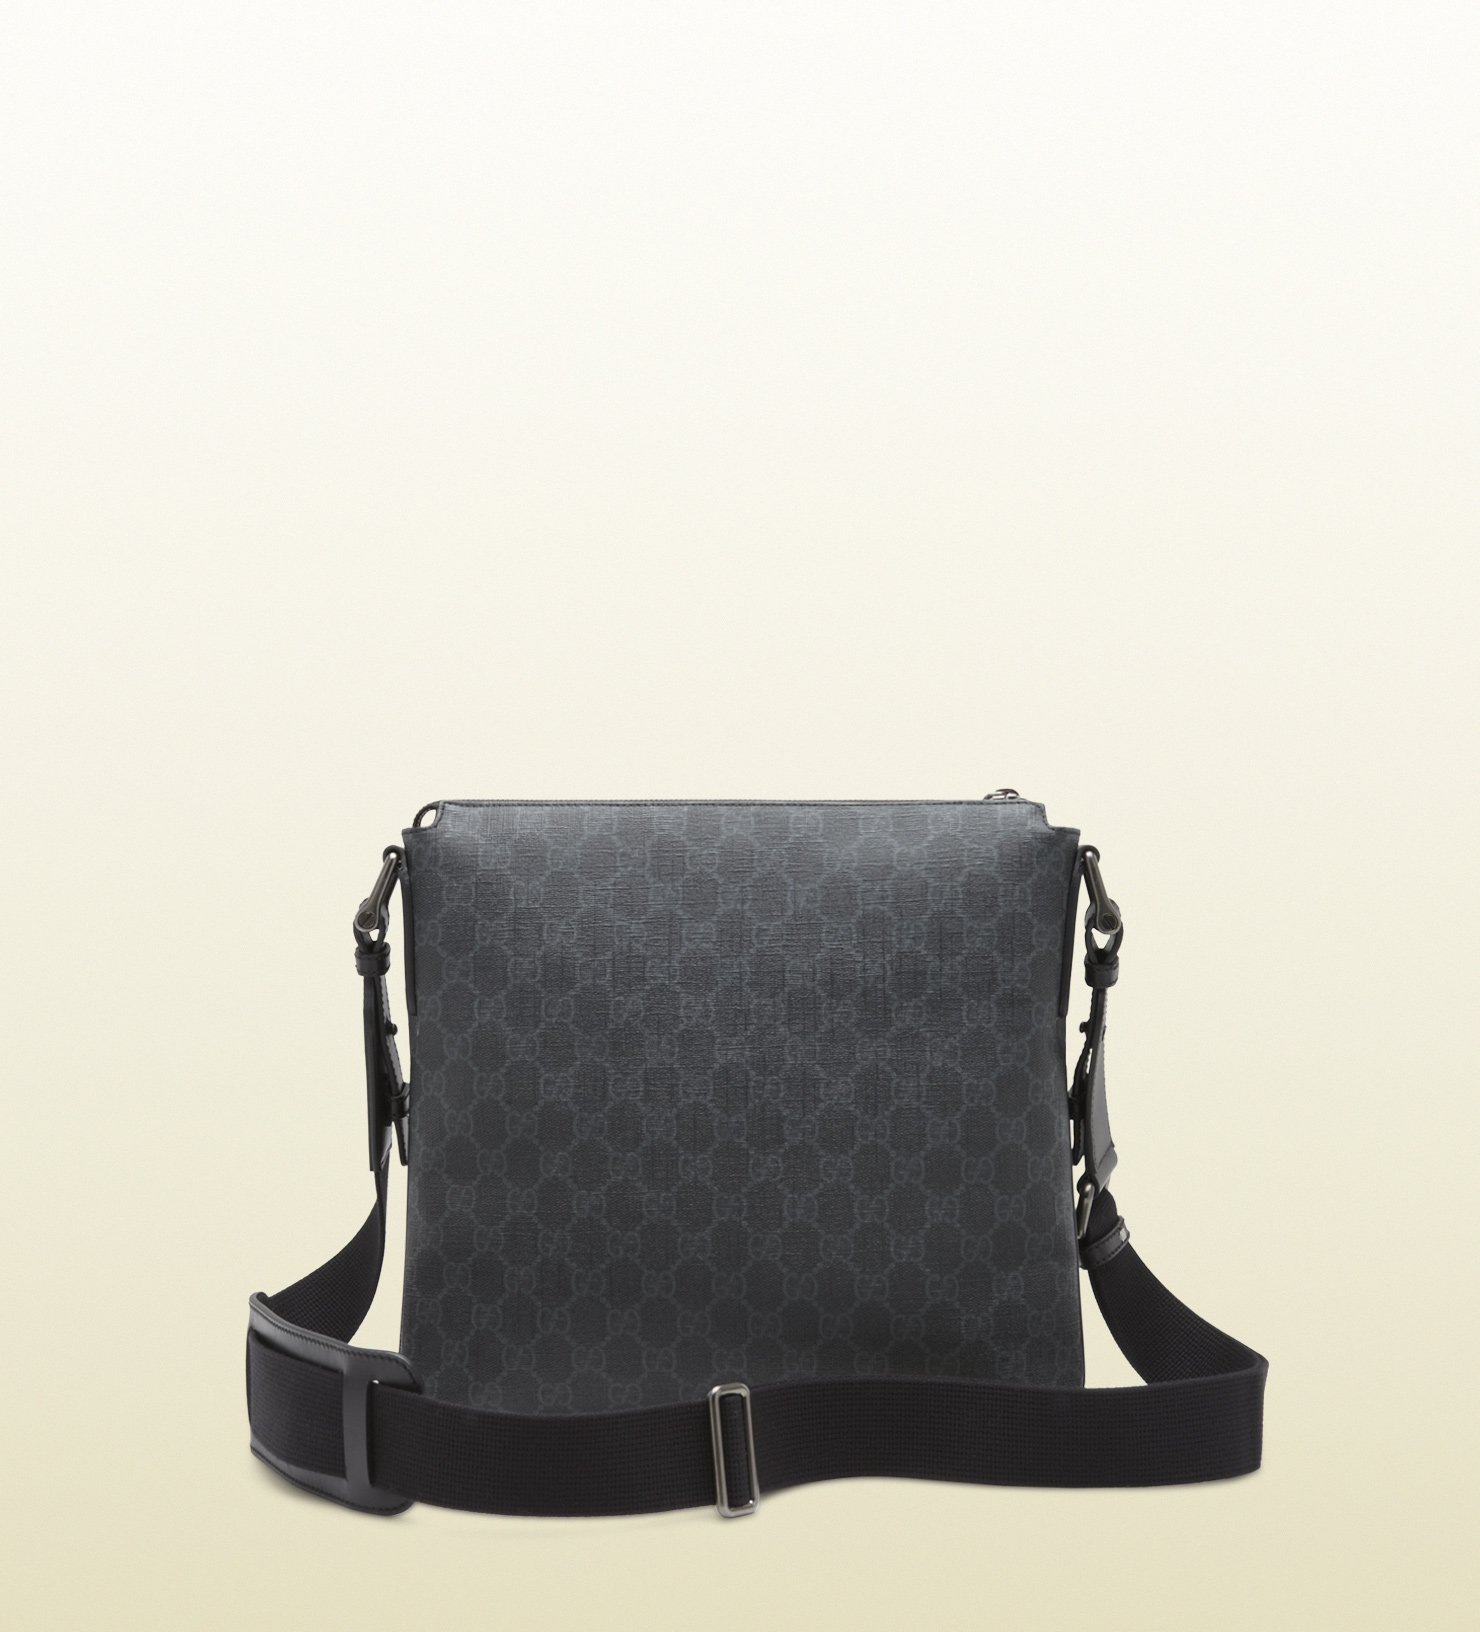 Lyst - Gucci Gg Supreme Canvas Messenger Bag in Black for Men